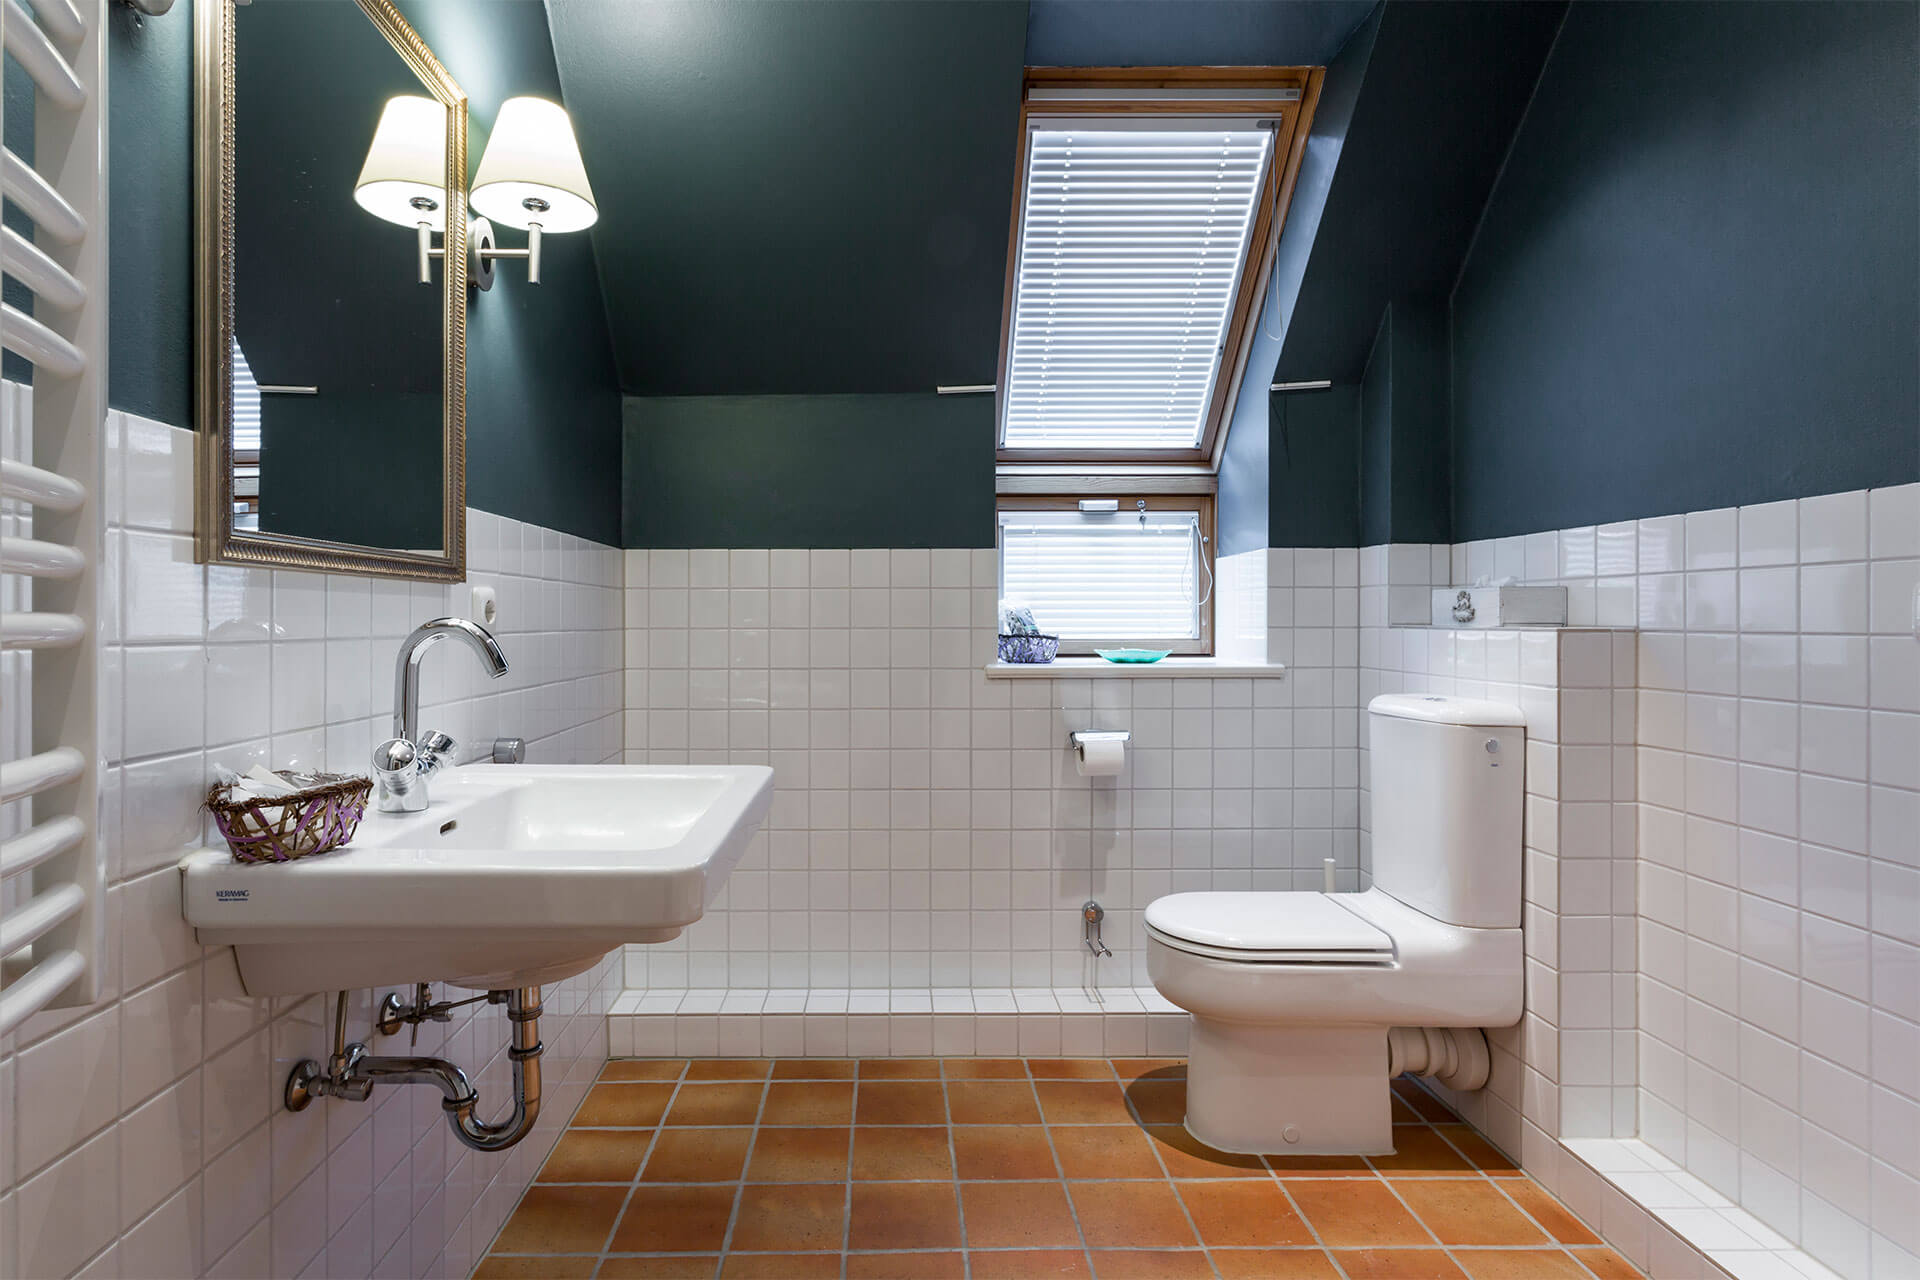 Das Badezimmer mit Terrafliese und schöner Ambientebeleuchtung